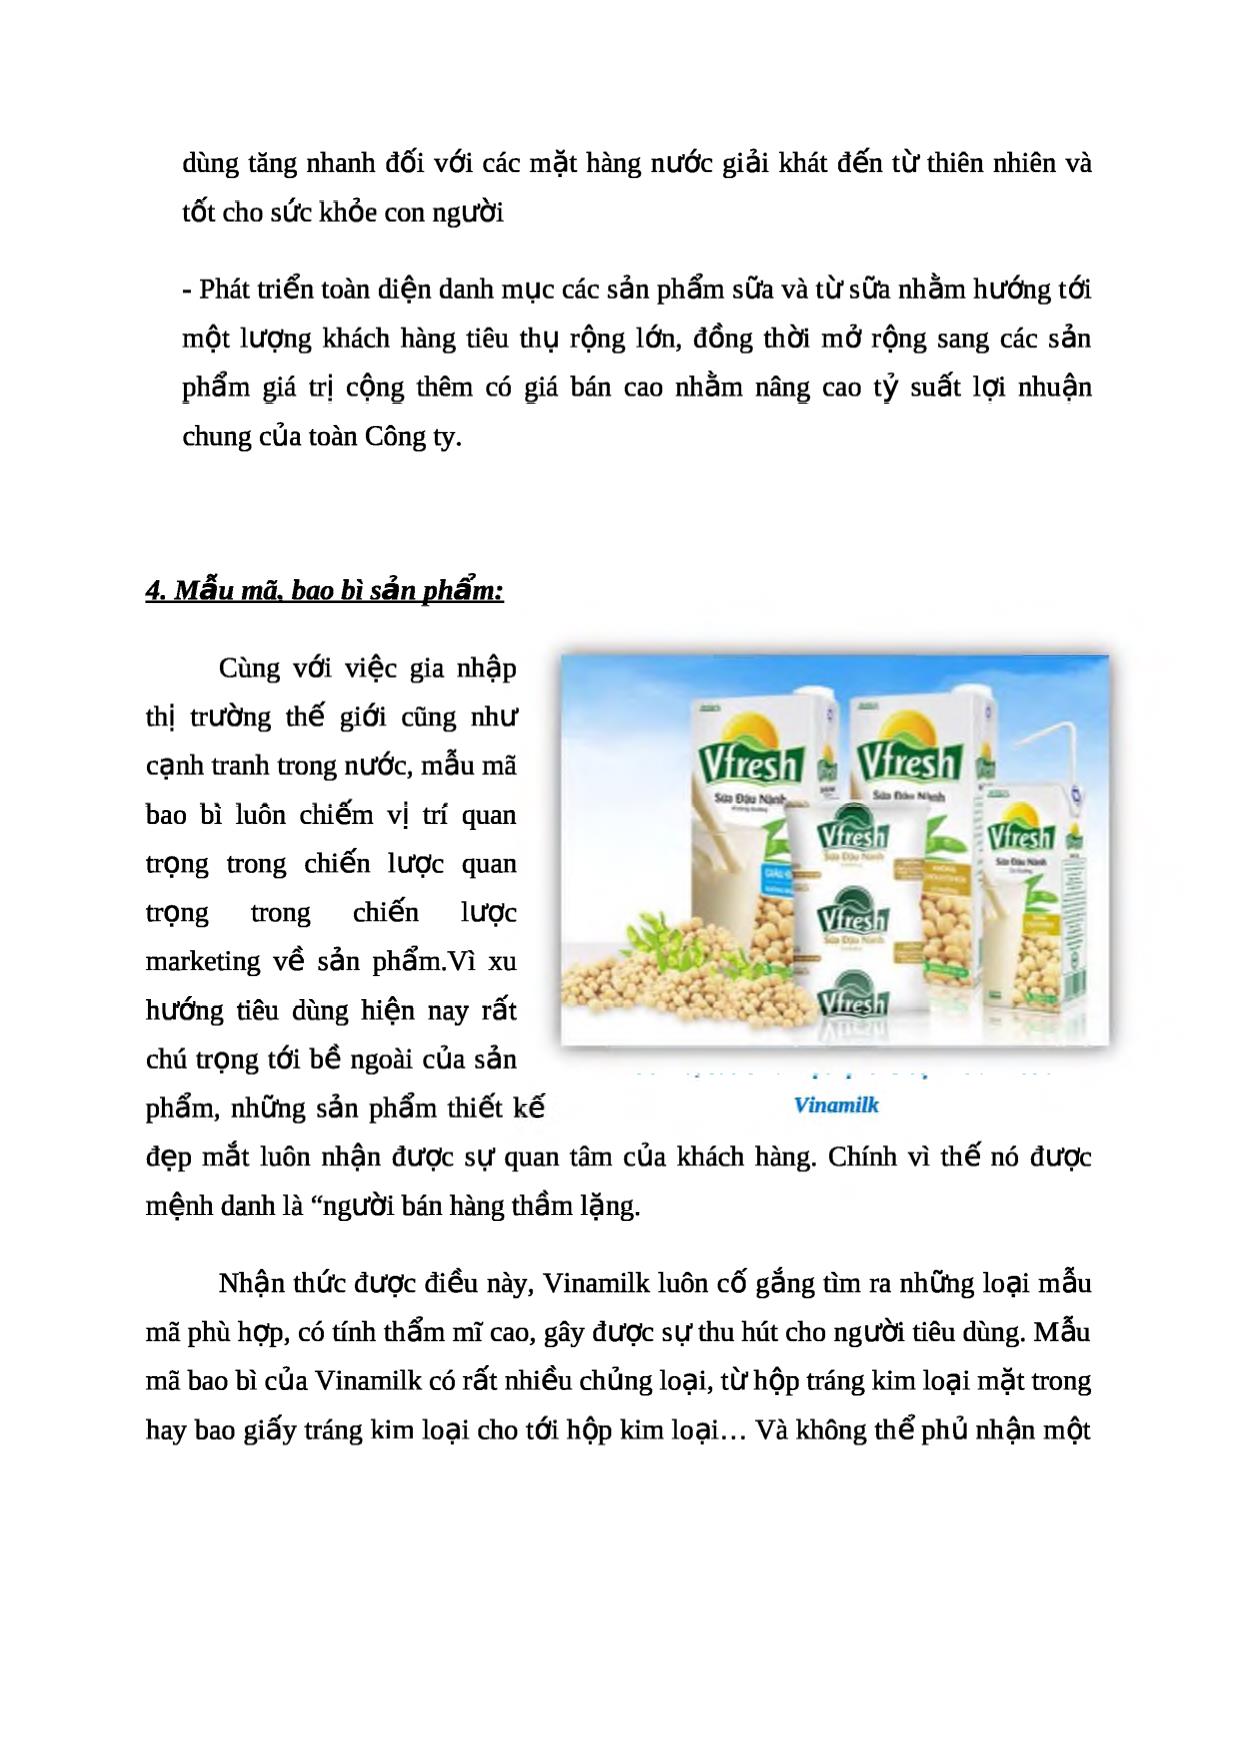 Chiến lược marketing về sản phẩm của vinamilk trang 4